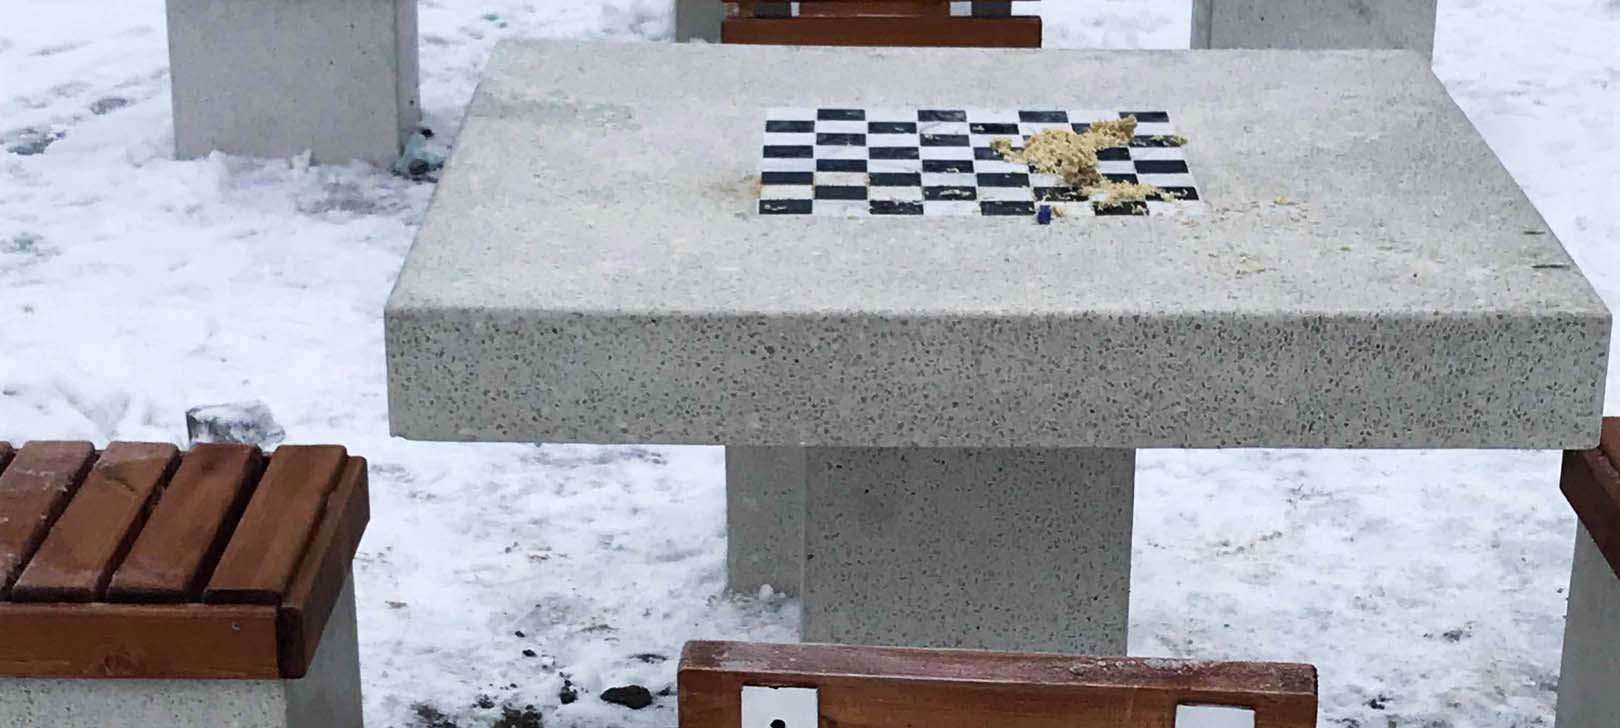 Неизвестные забросали мусором каменные шахматные доски, установленные в Петрозаводске (ФОТО) 